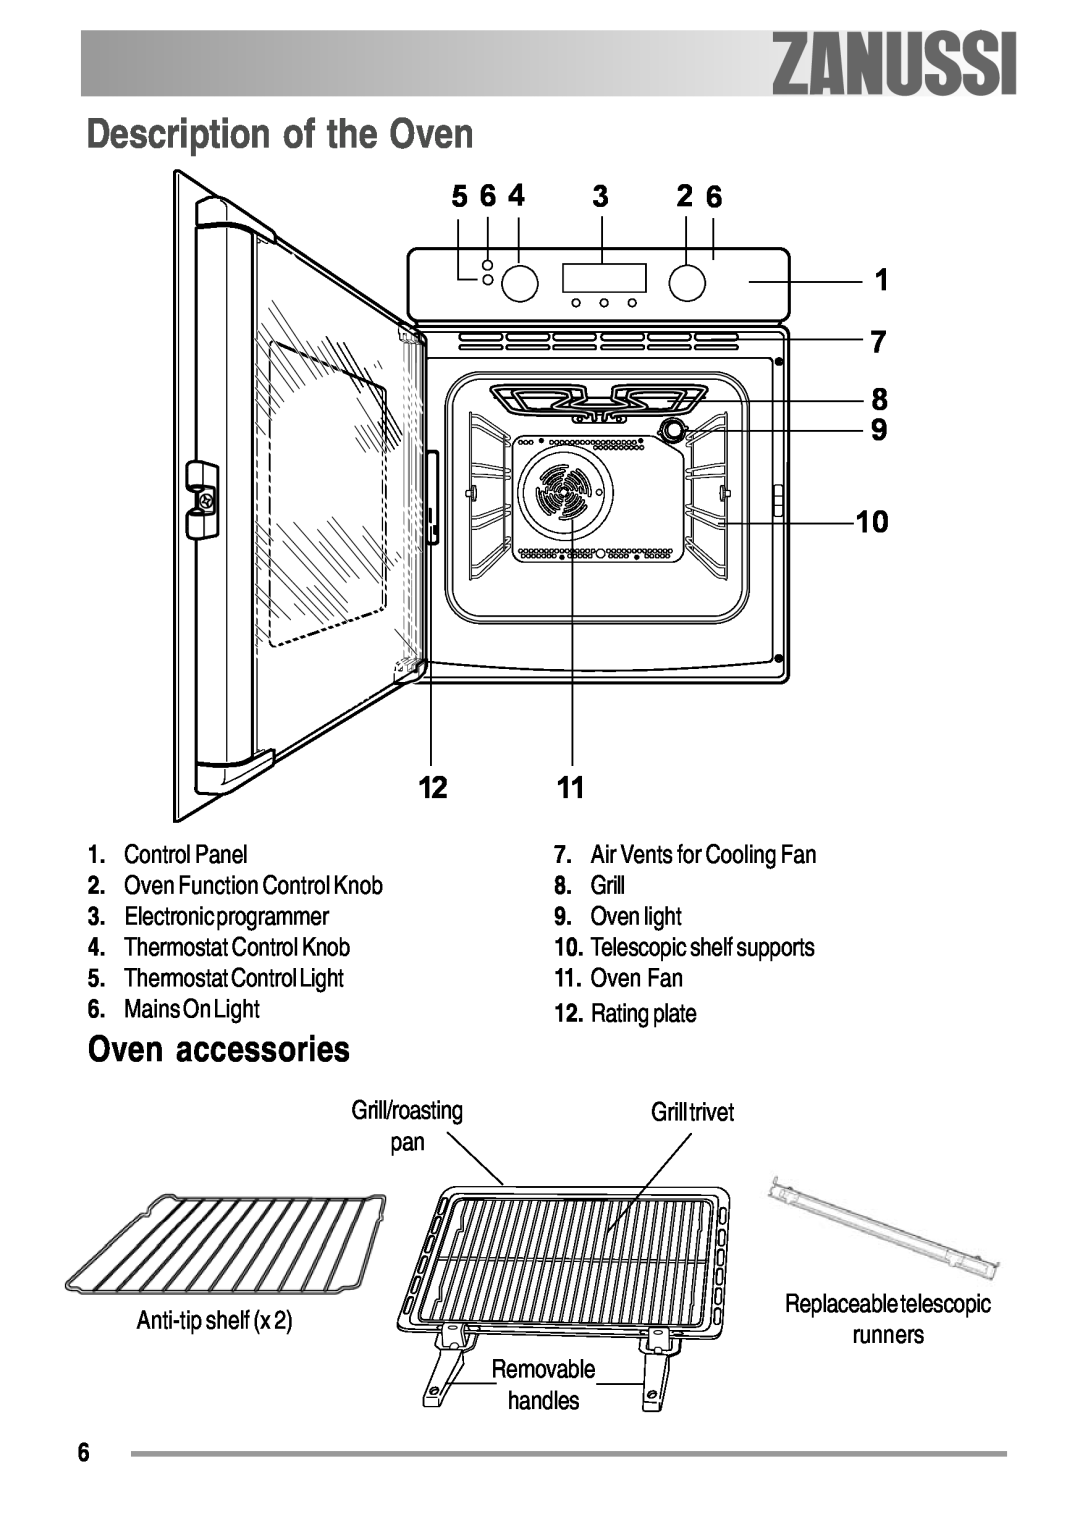 Zanussi ZOB 550 user manual Description of the Oven, Oven accessories 